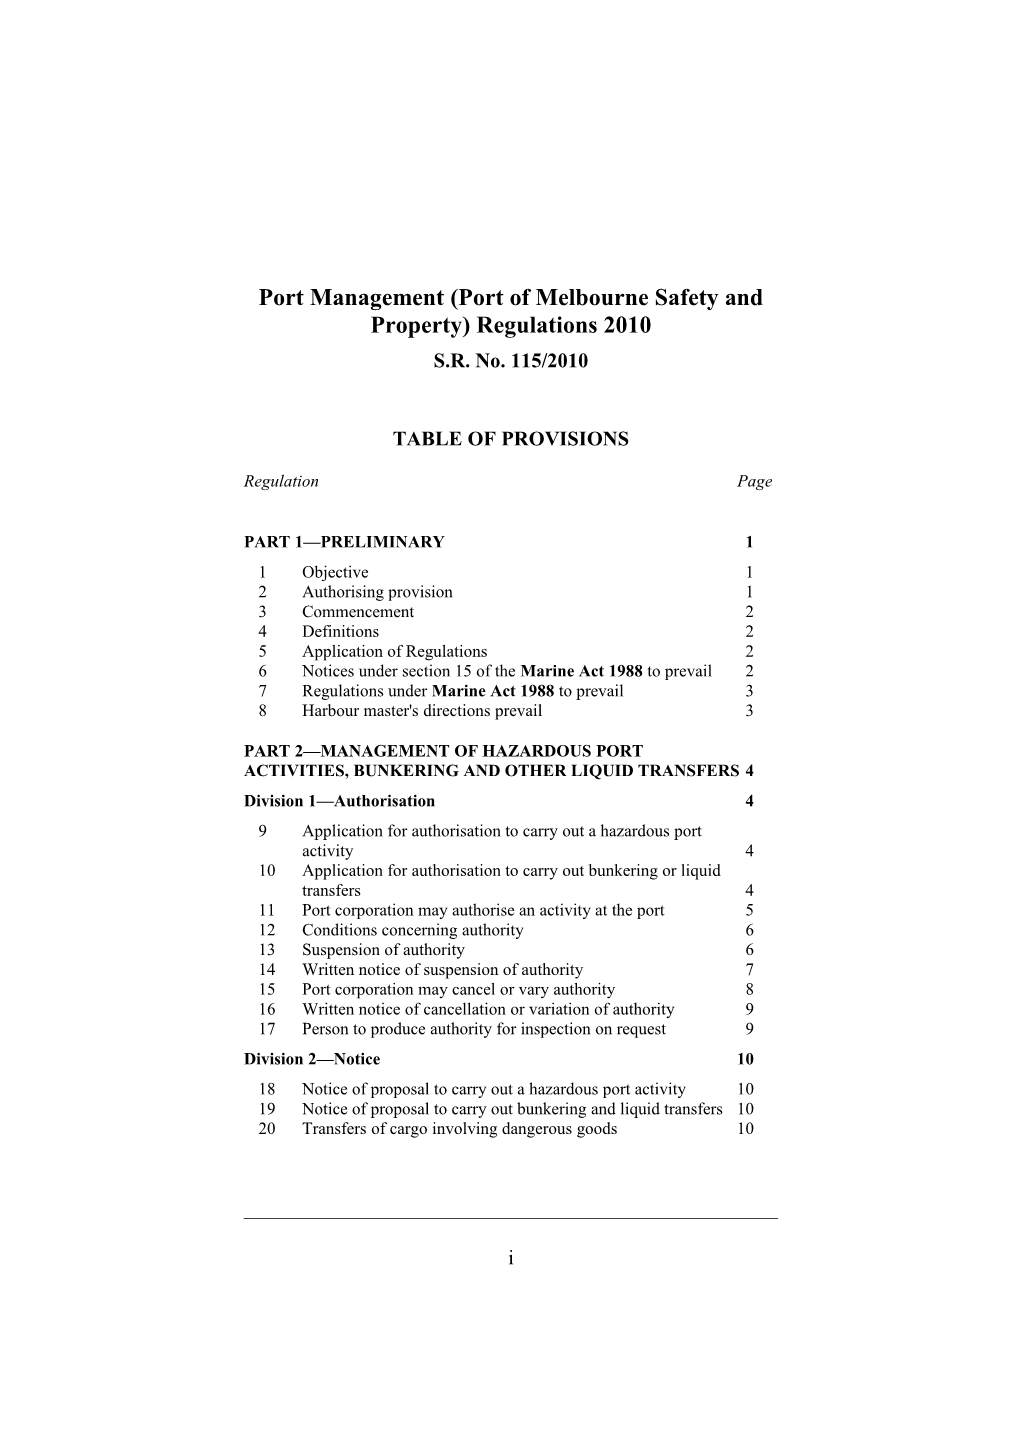 Port Management (Port of Melbourne Safety and Property) Regulations 2010